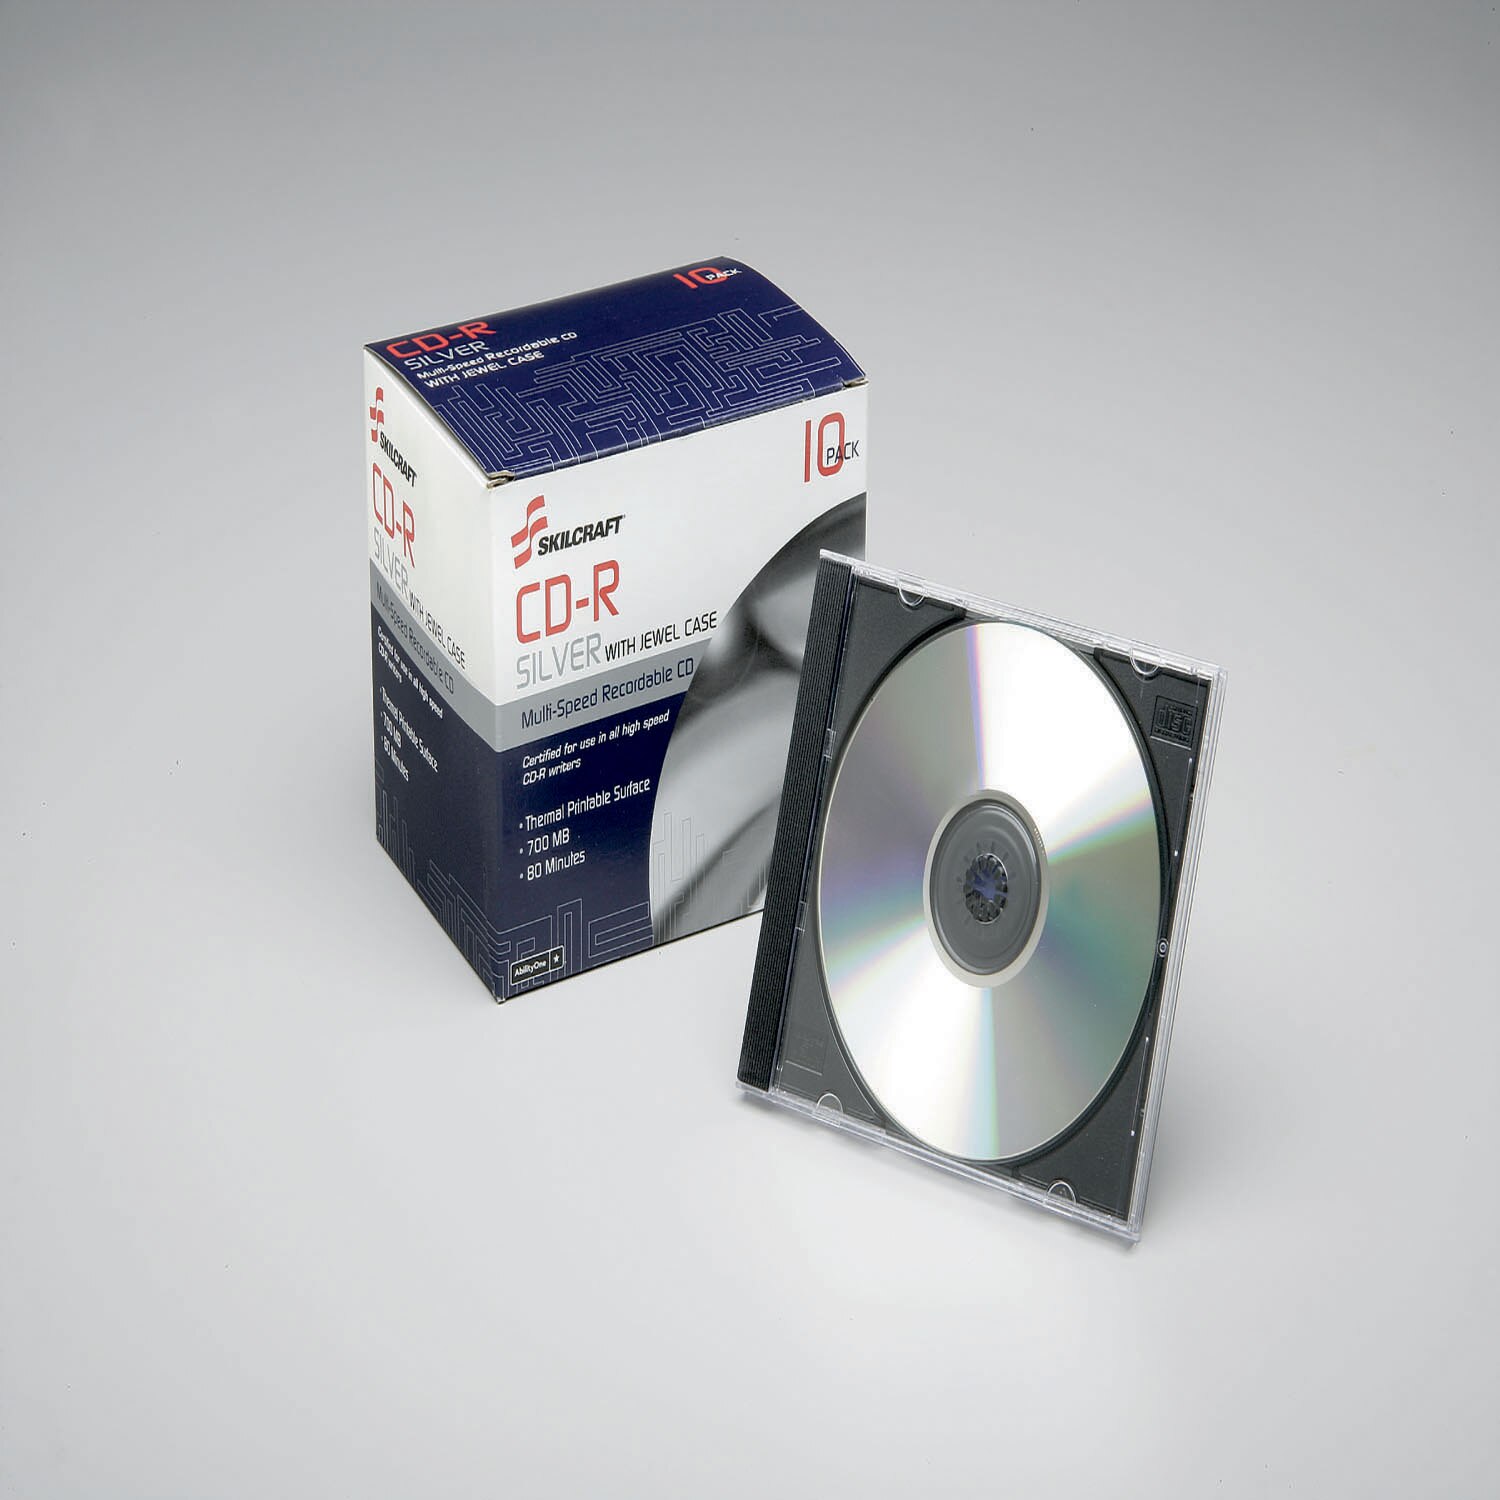 CD-R Silver w/Jewel Case, 10pk